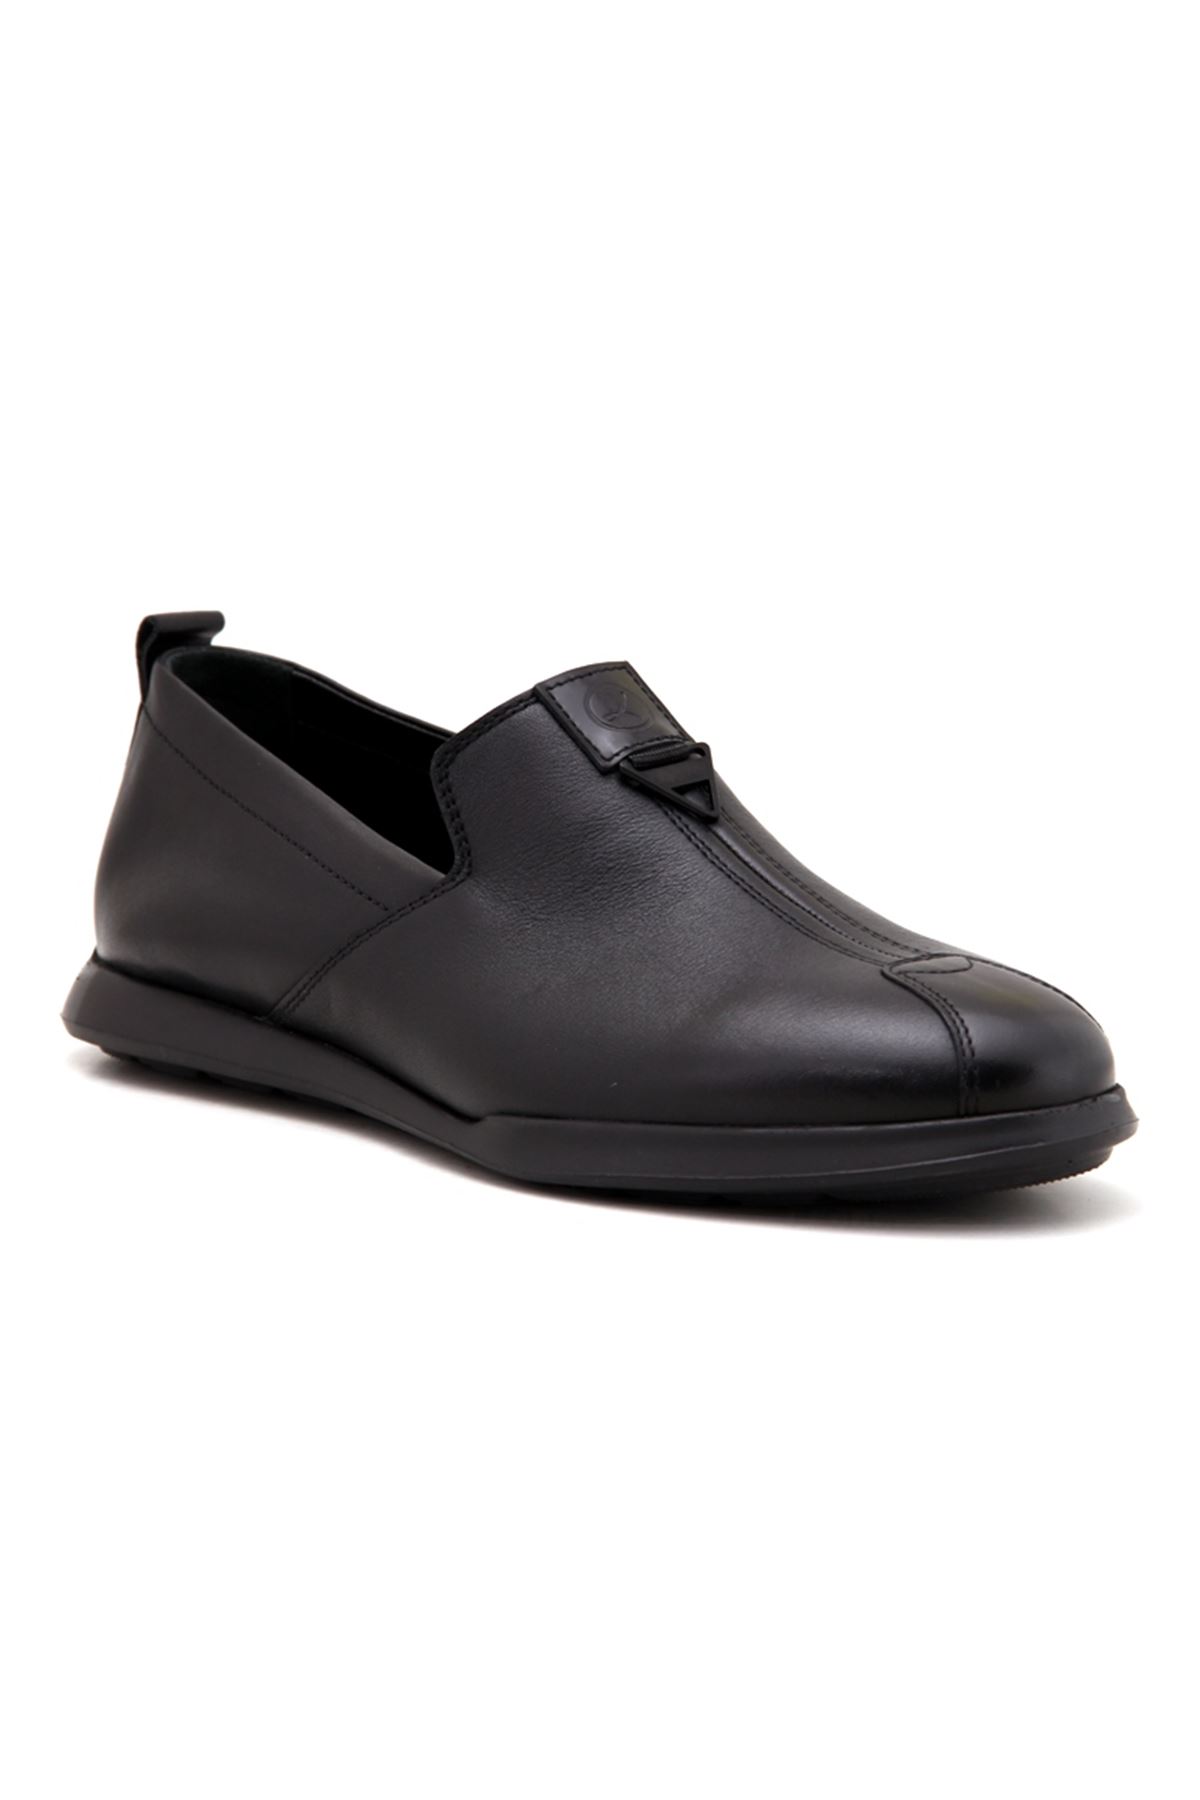 Libero 3749 Deri Günlük Erkek Ayakkabı - Siyah